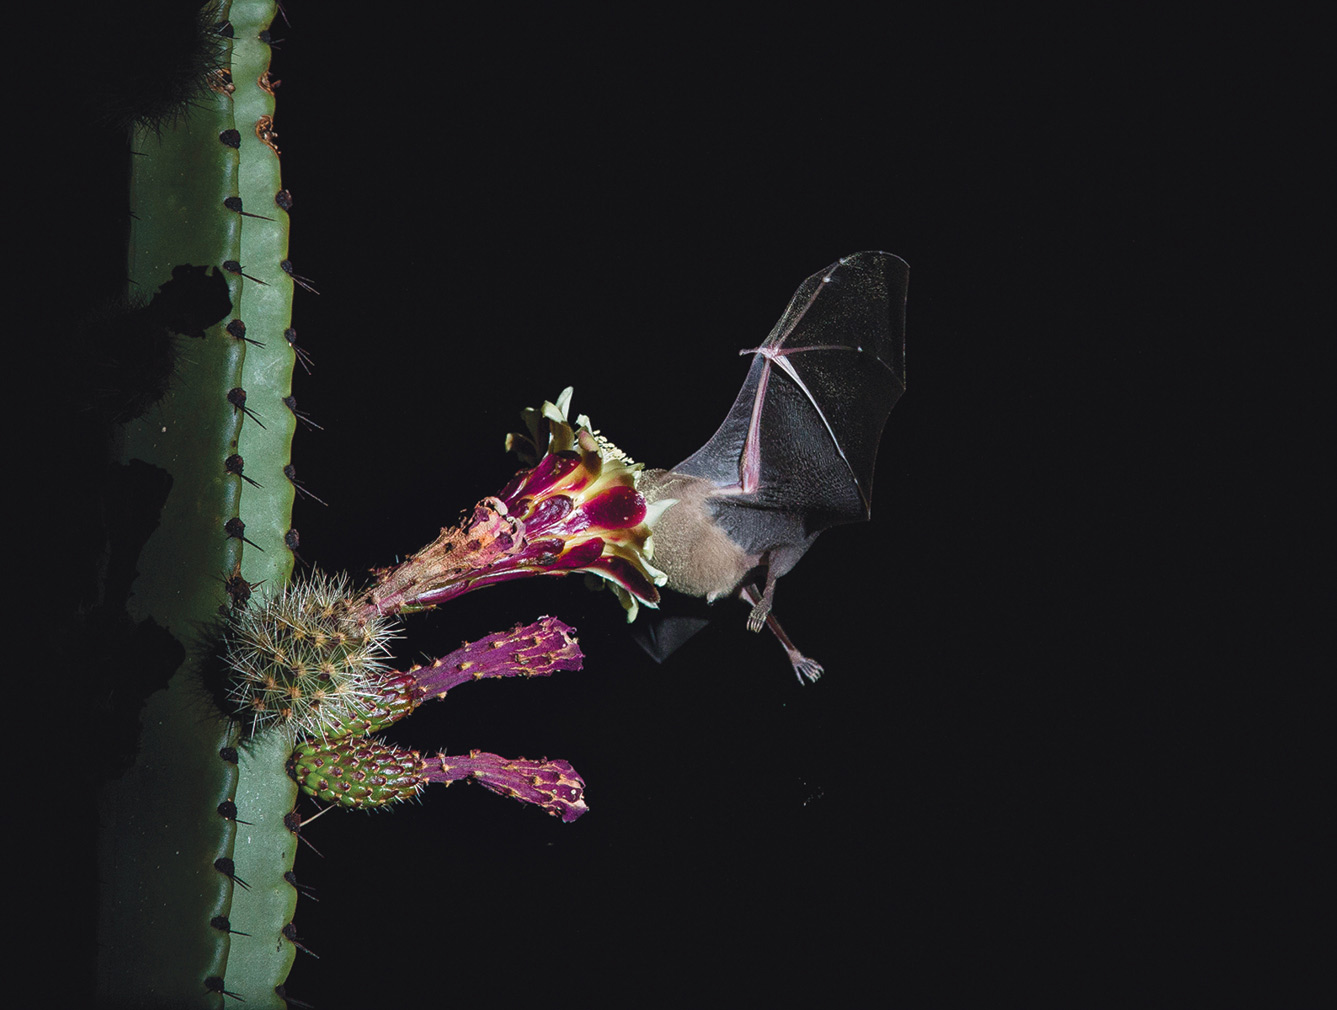 lesser long-nosed bat pollinating Pitaya